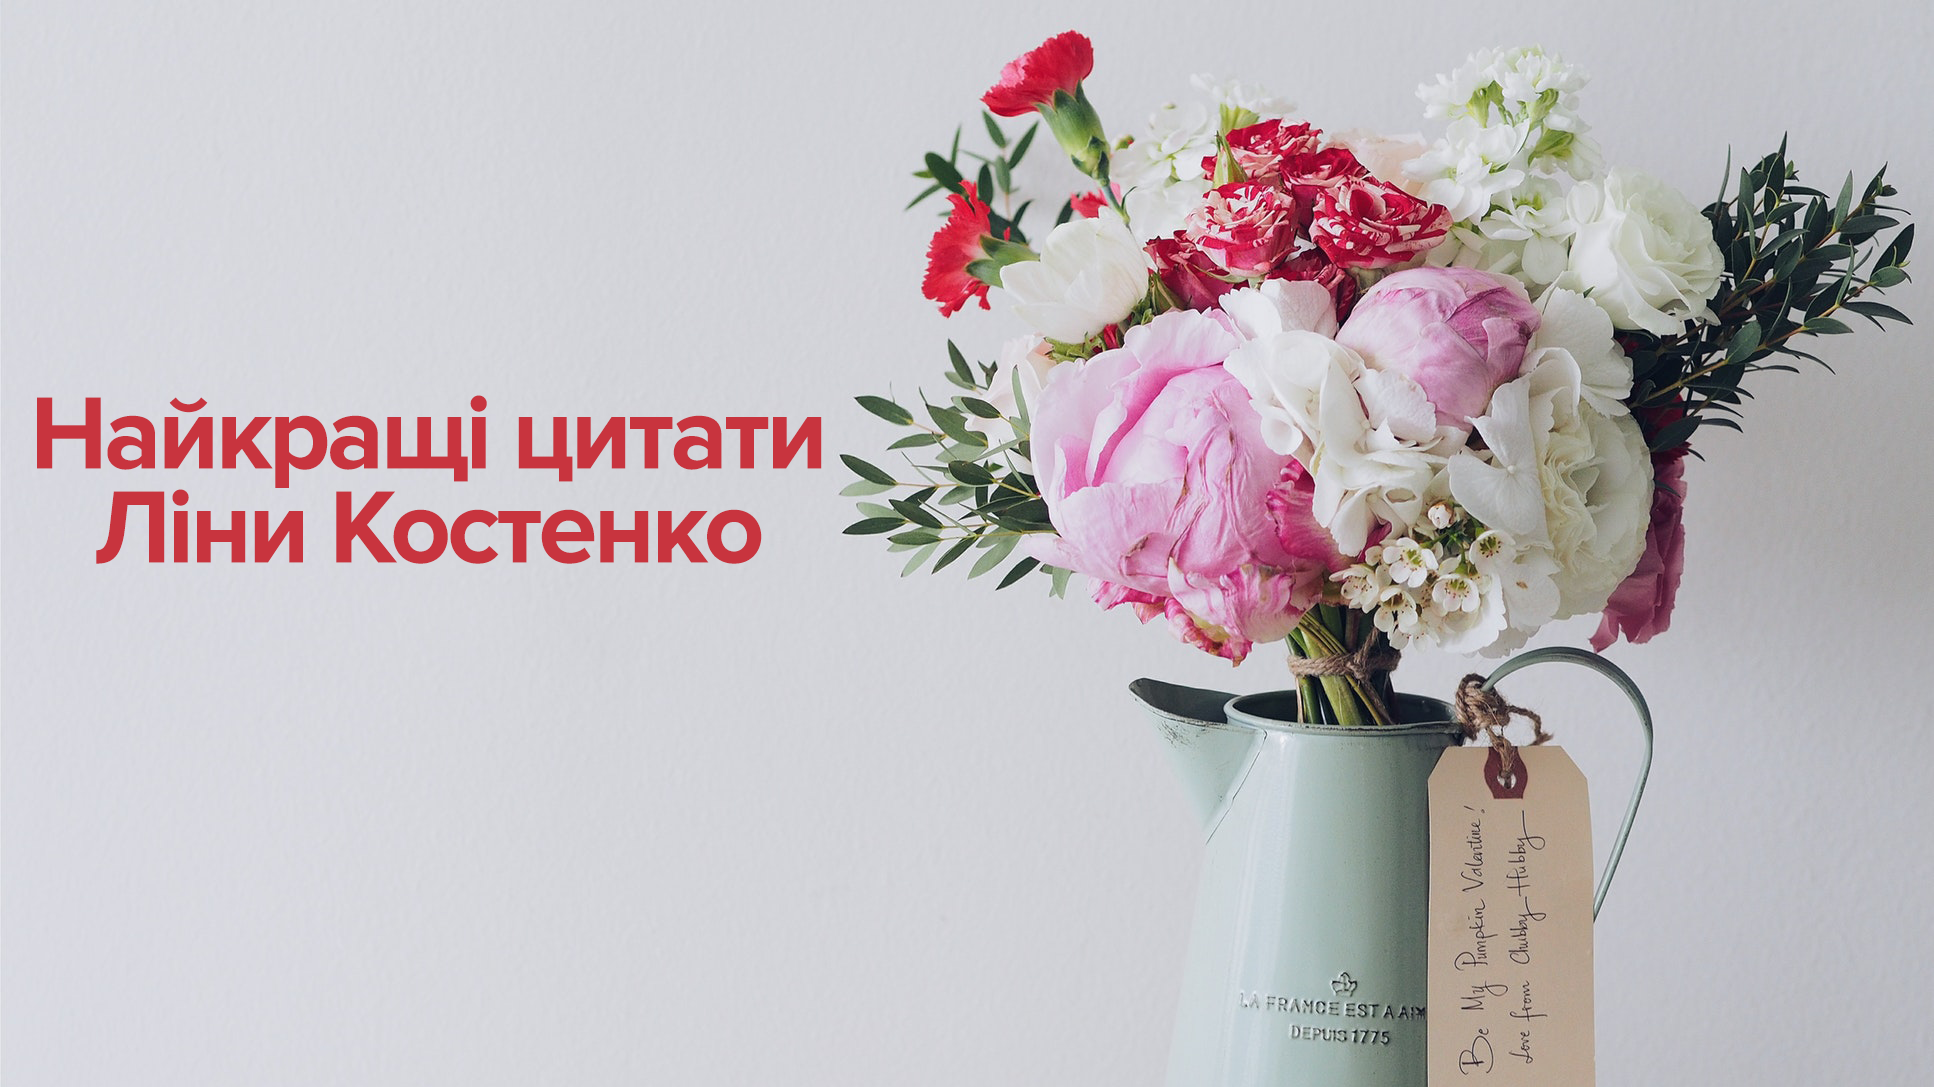 Лина Костенко - цитаты о любви, о людях, о языке, о политике, о женщинах